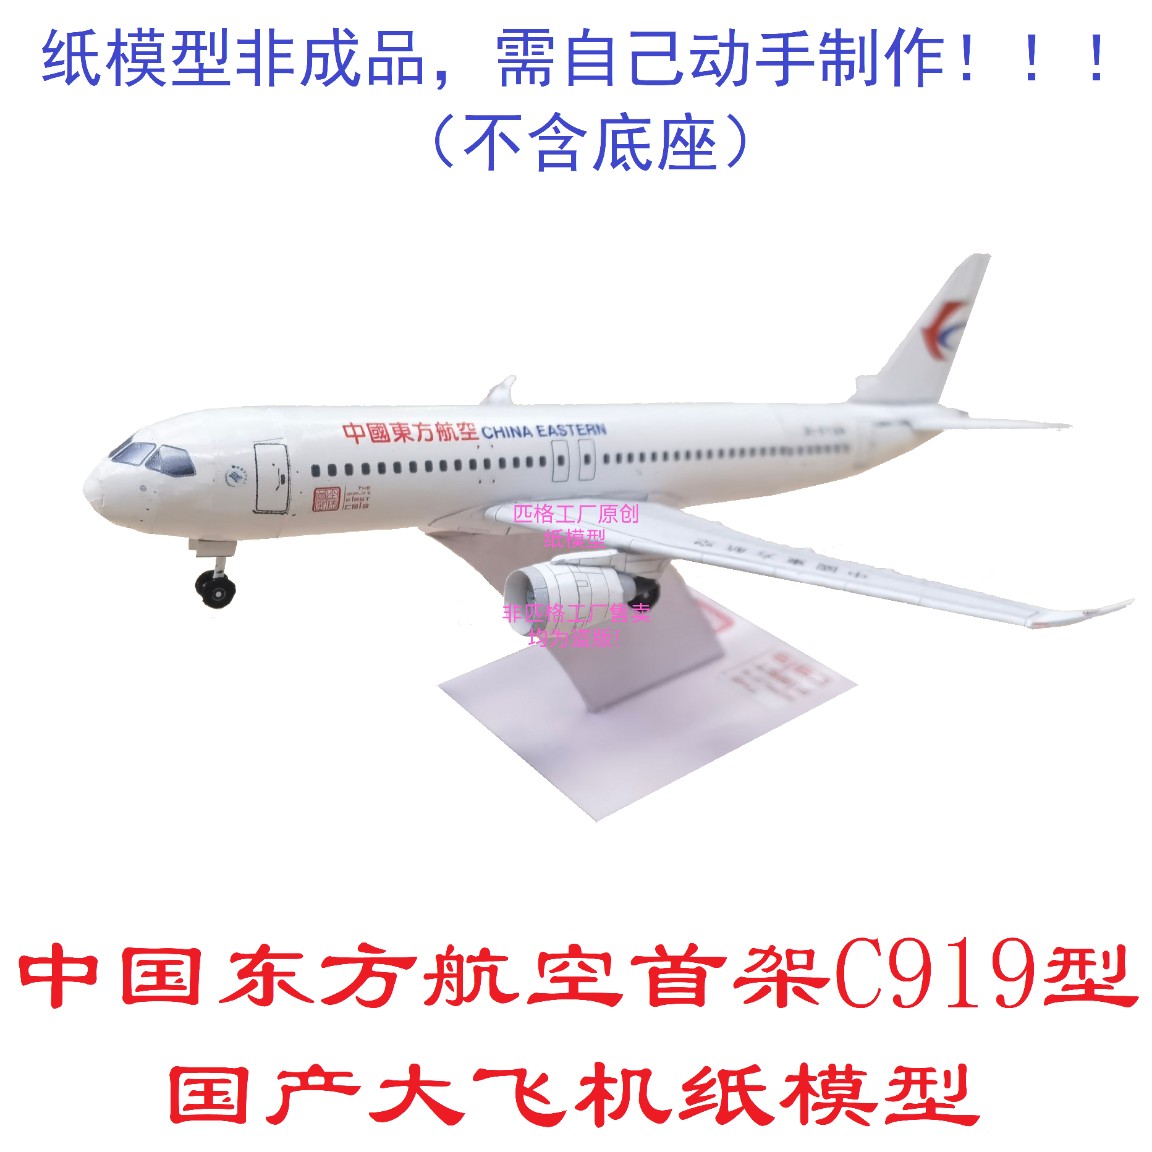 国产大飞机中国东方航空C919客机模型3D纸模DIY手工客机民航模型